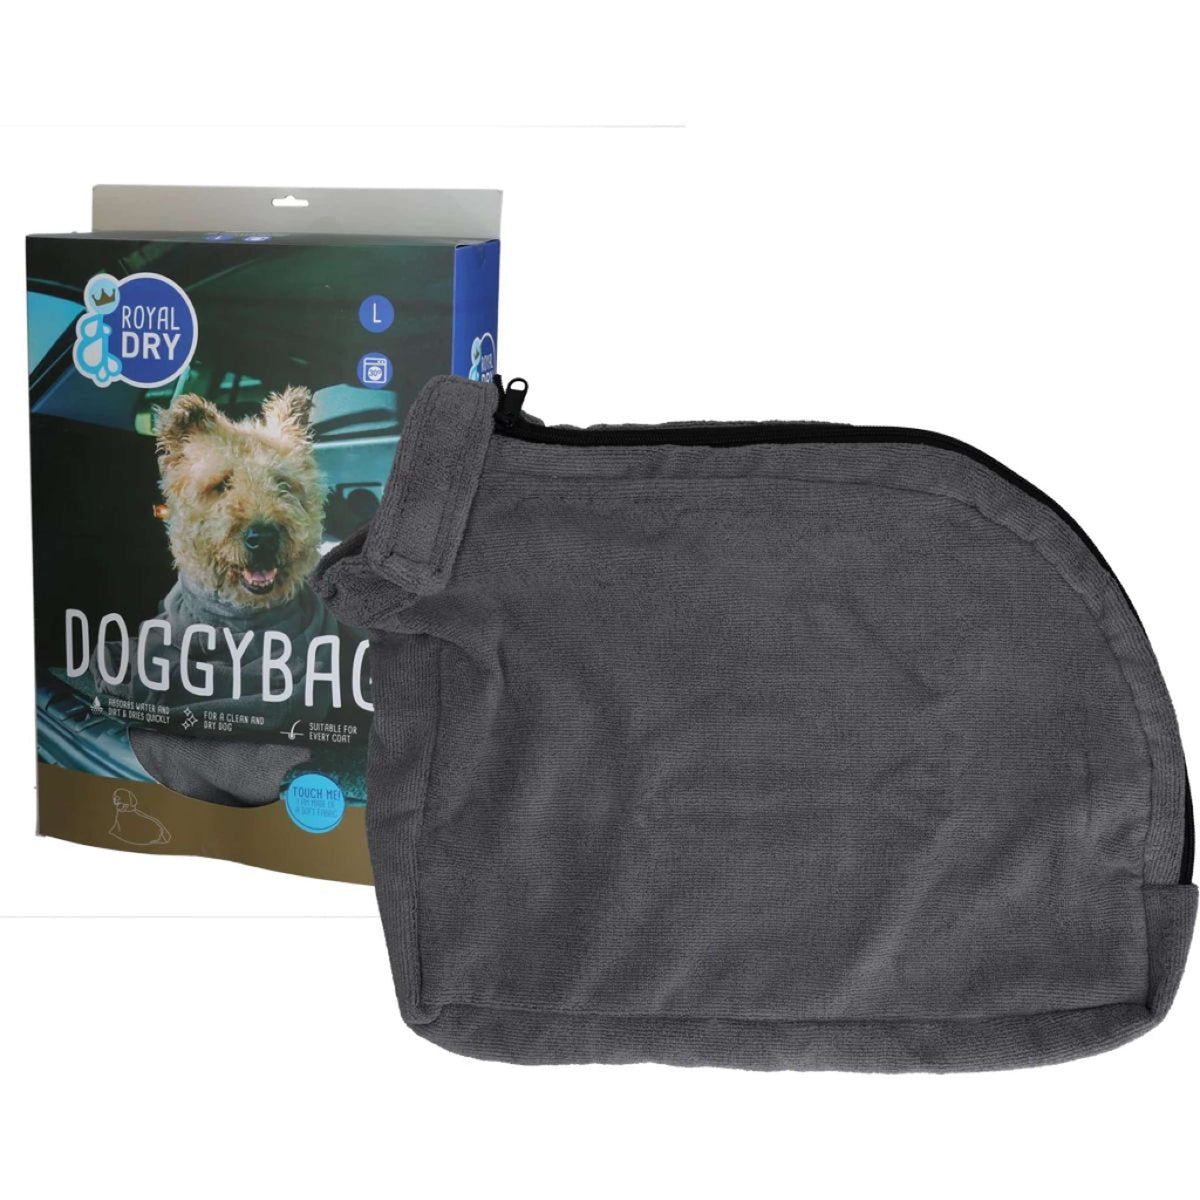 Royal Dry Doggy Bag Trockenbeutel Grau